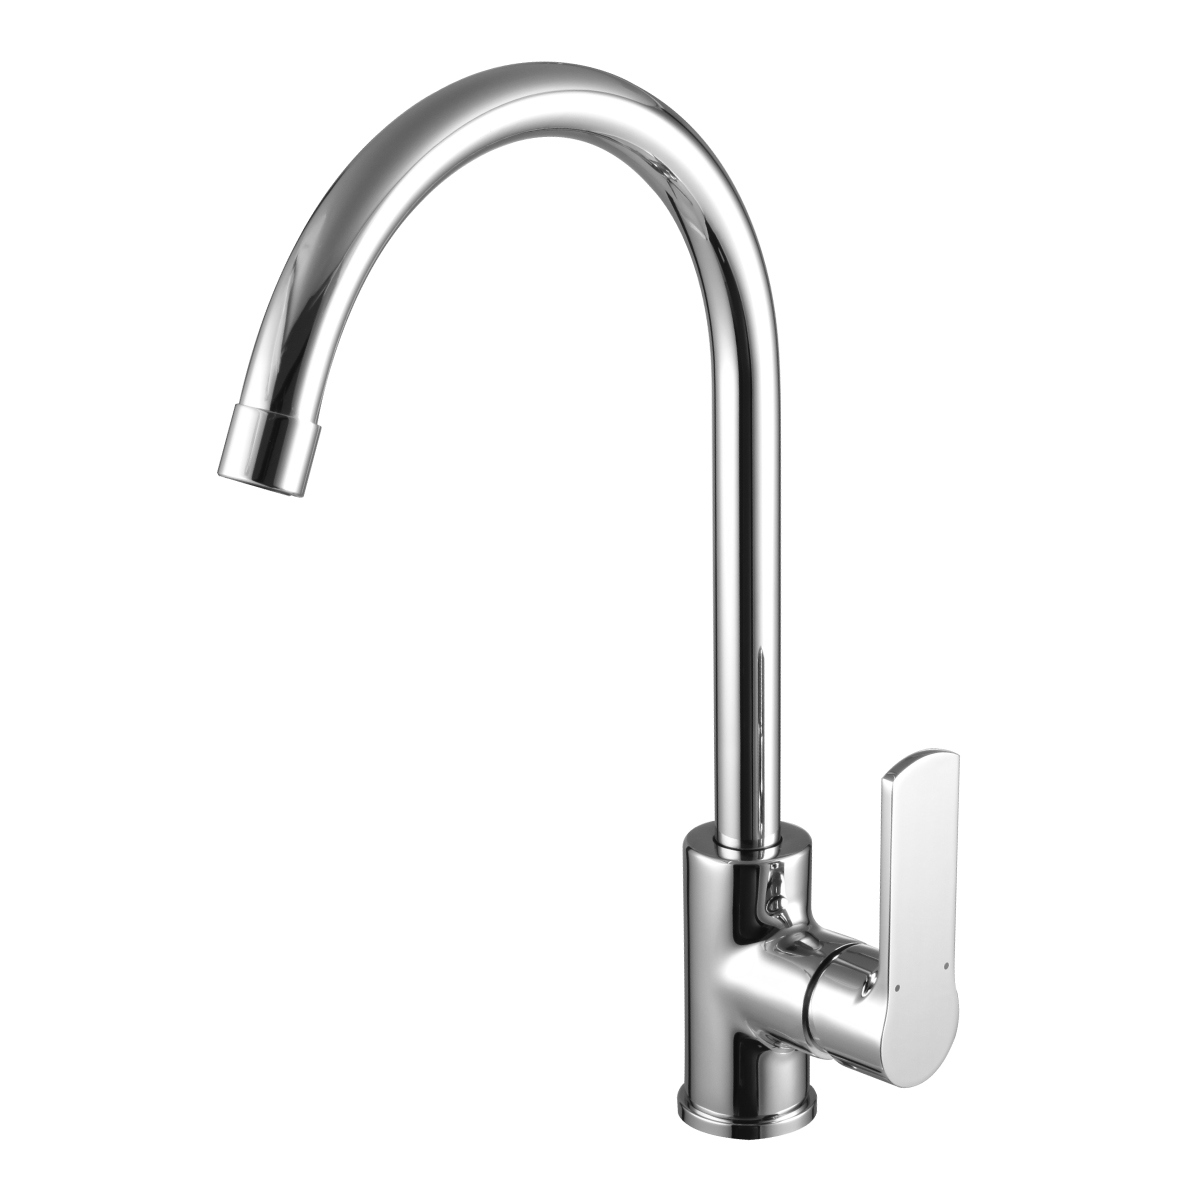 LM1505C Kitchen faucet
with swivel spout